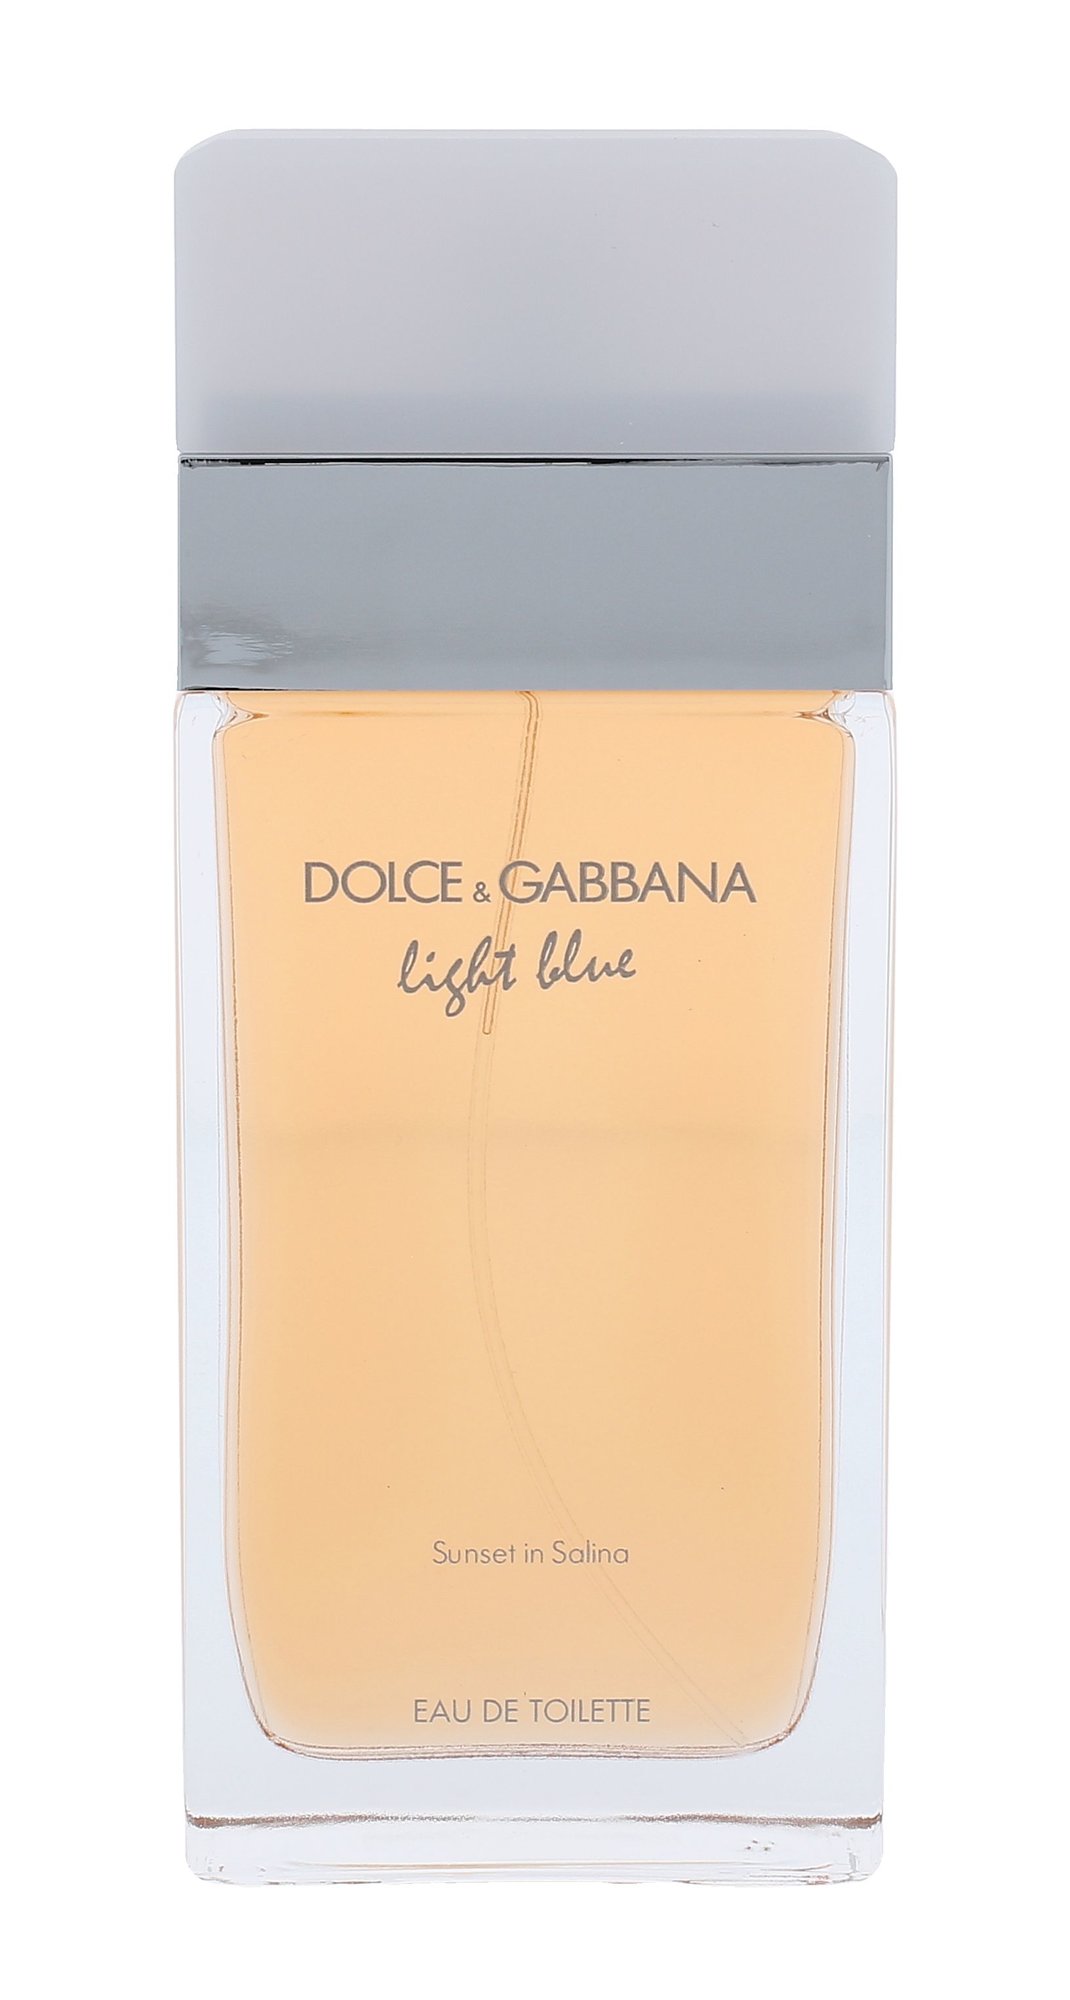 Dolce & Gabbana Light Blue Sunset in Salina